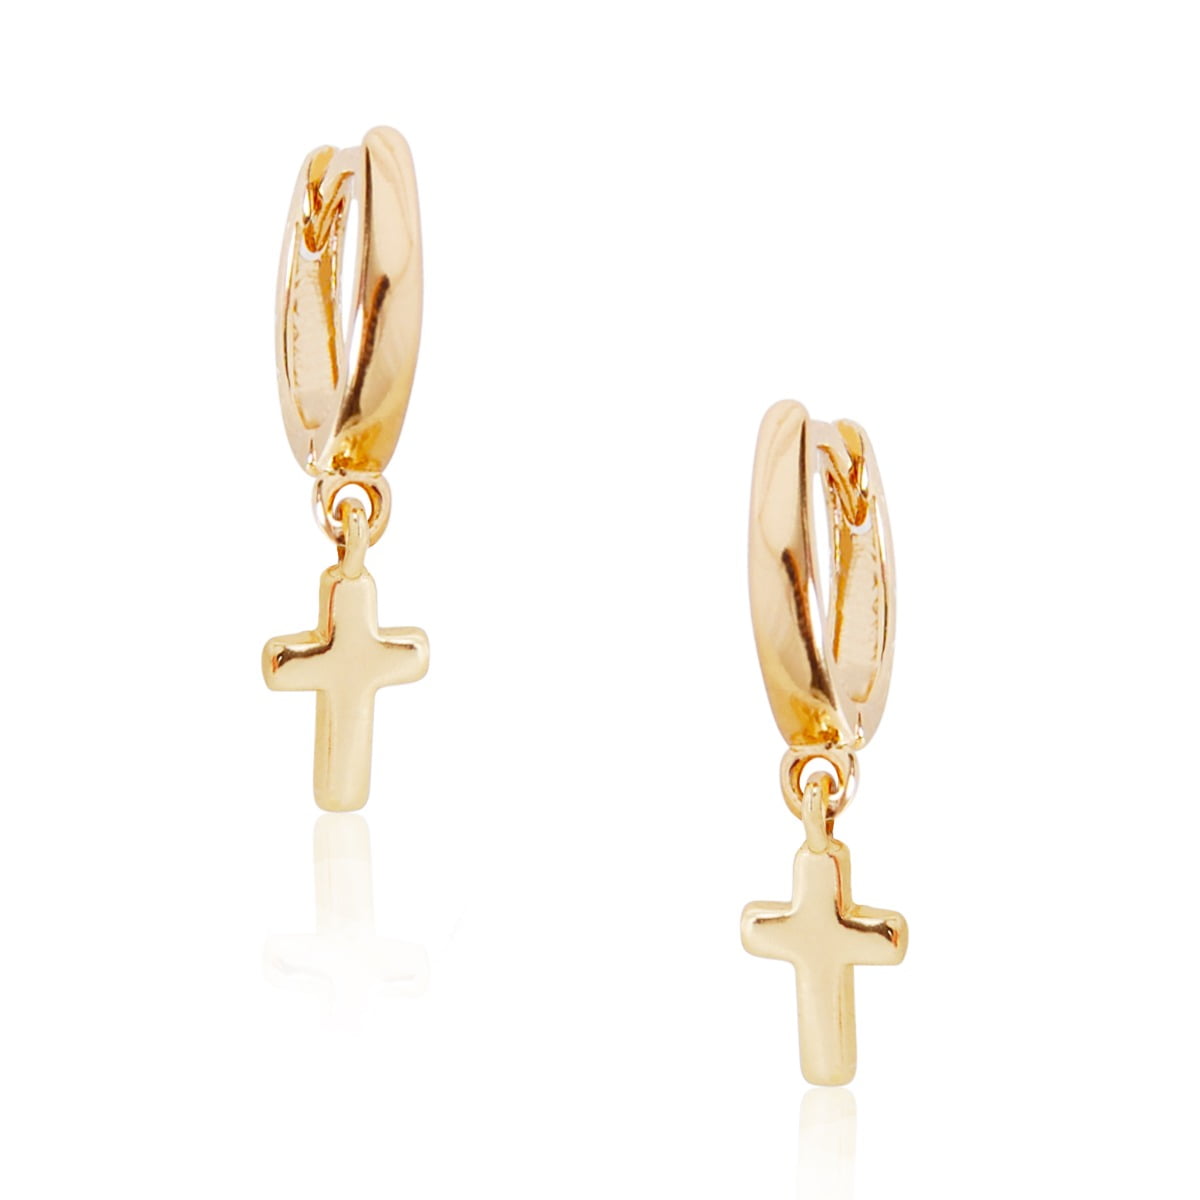 Stud Cross Earrings Cross Earrings For Women Small Gold Cross Hoop Earrings Gold Hoop Earrings With Charm Hoop Cross Earrings